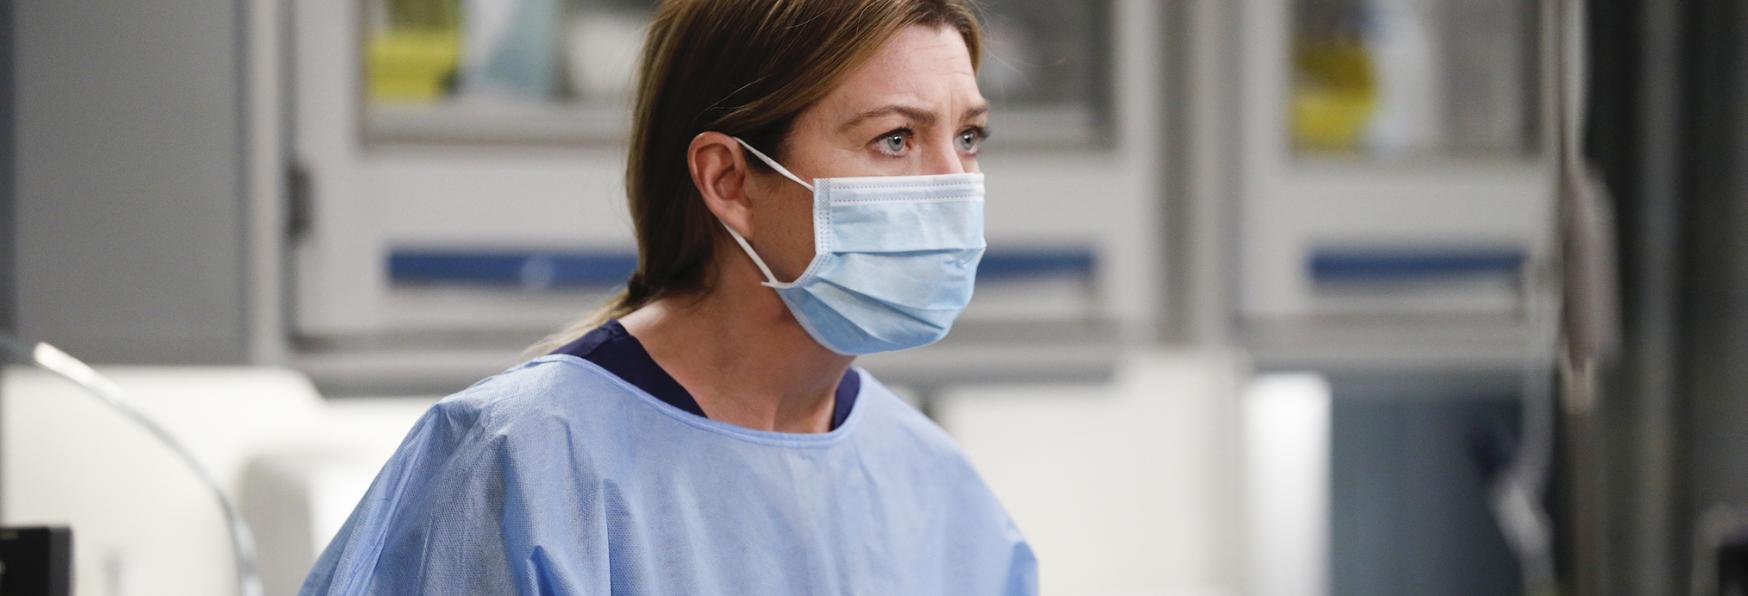 Grey's Anatomy 17: la Recensione dei Primi Tre Episodi di questa Stagione